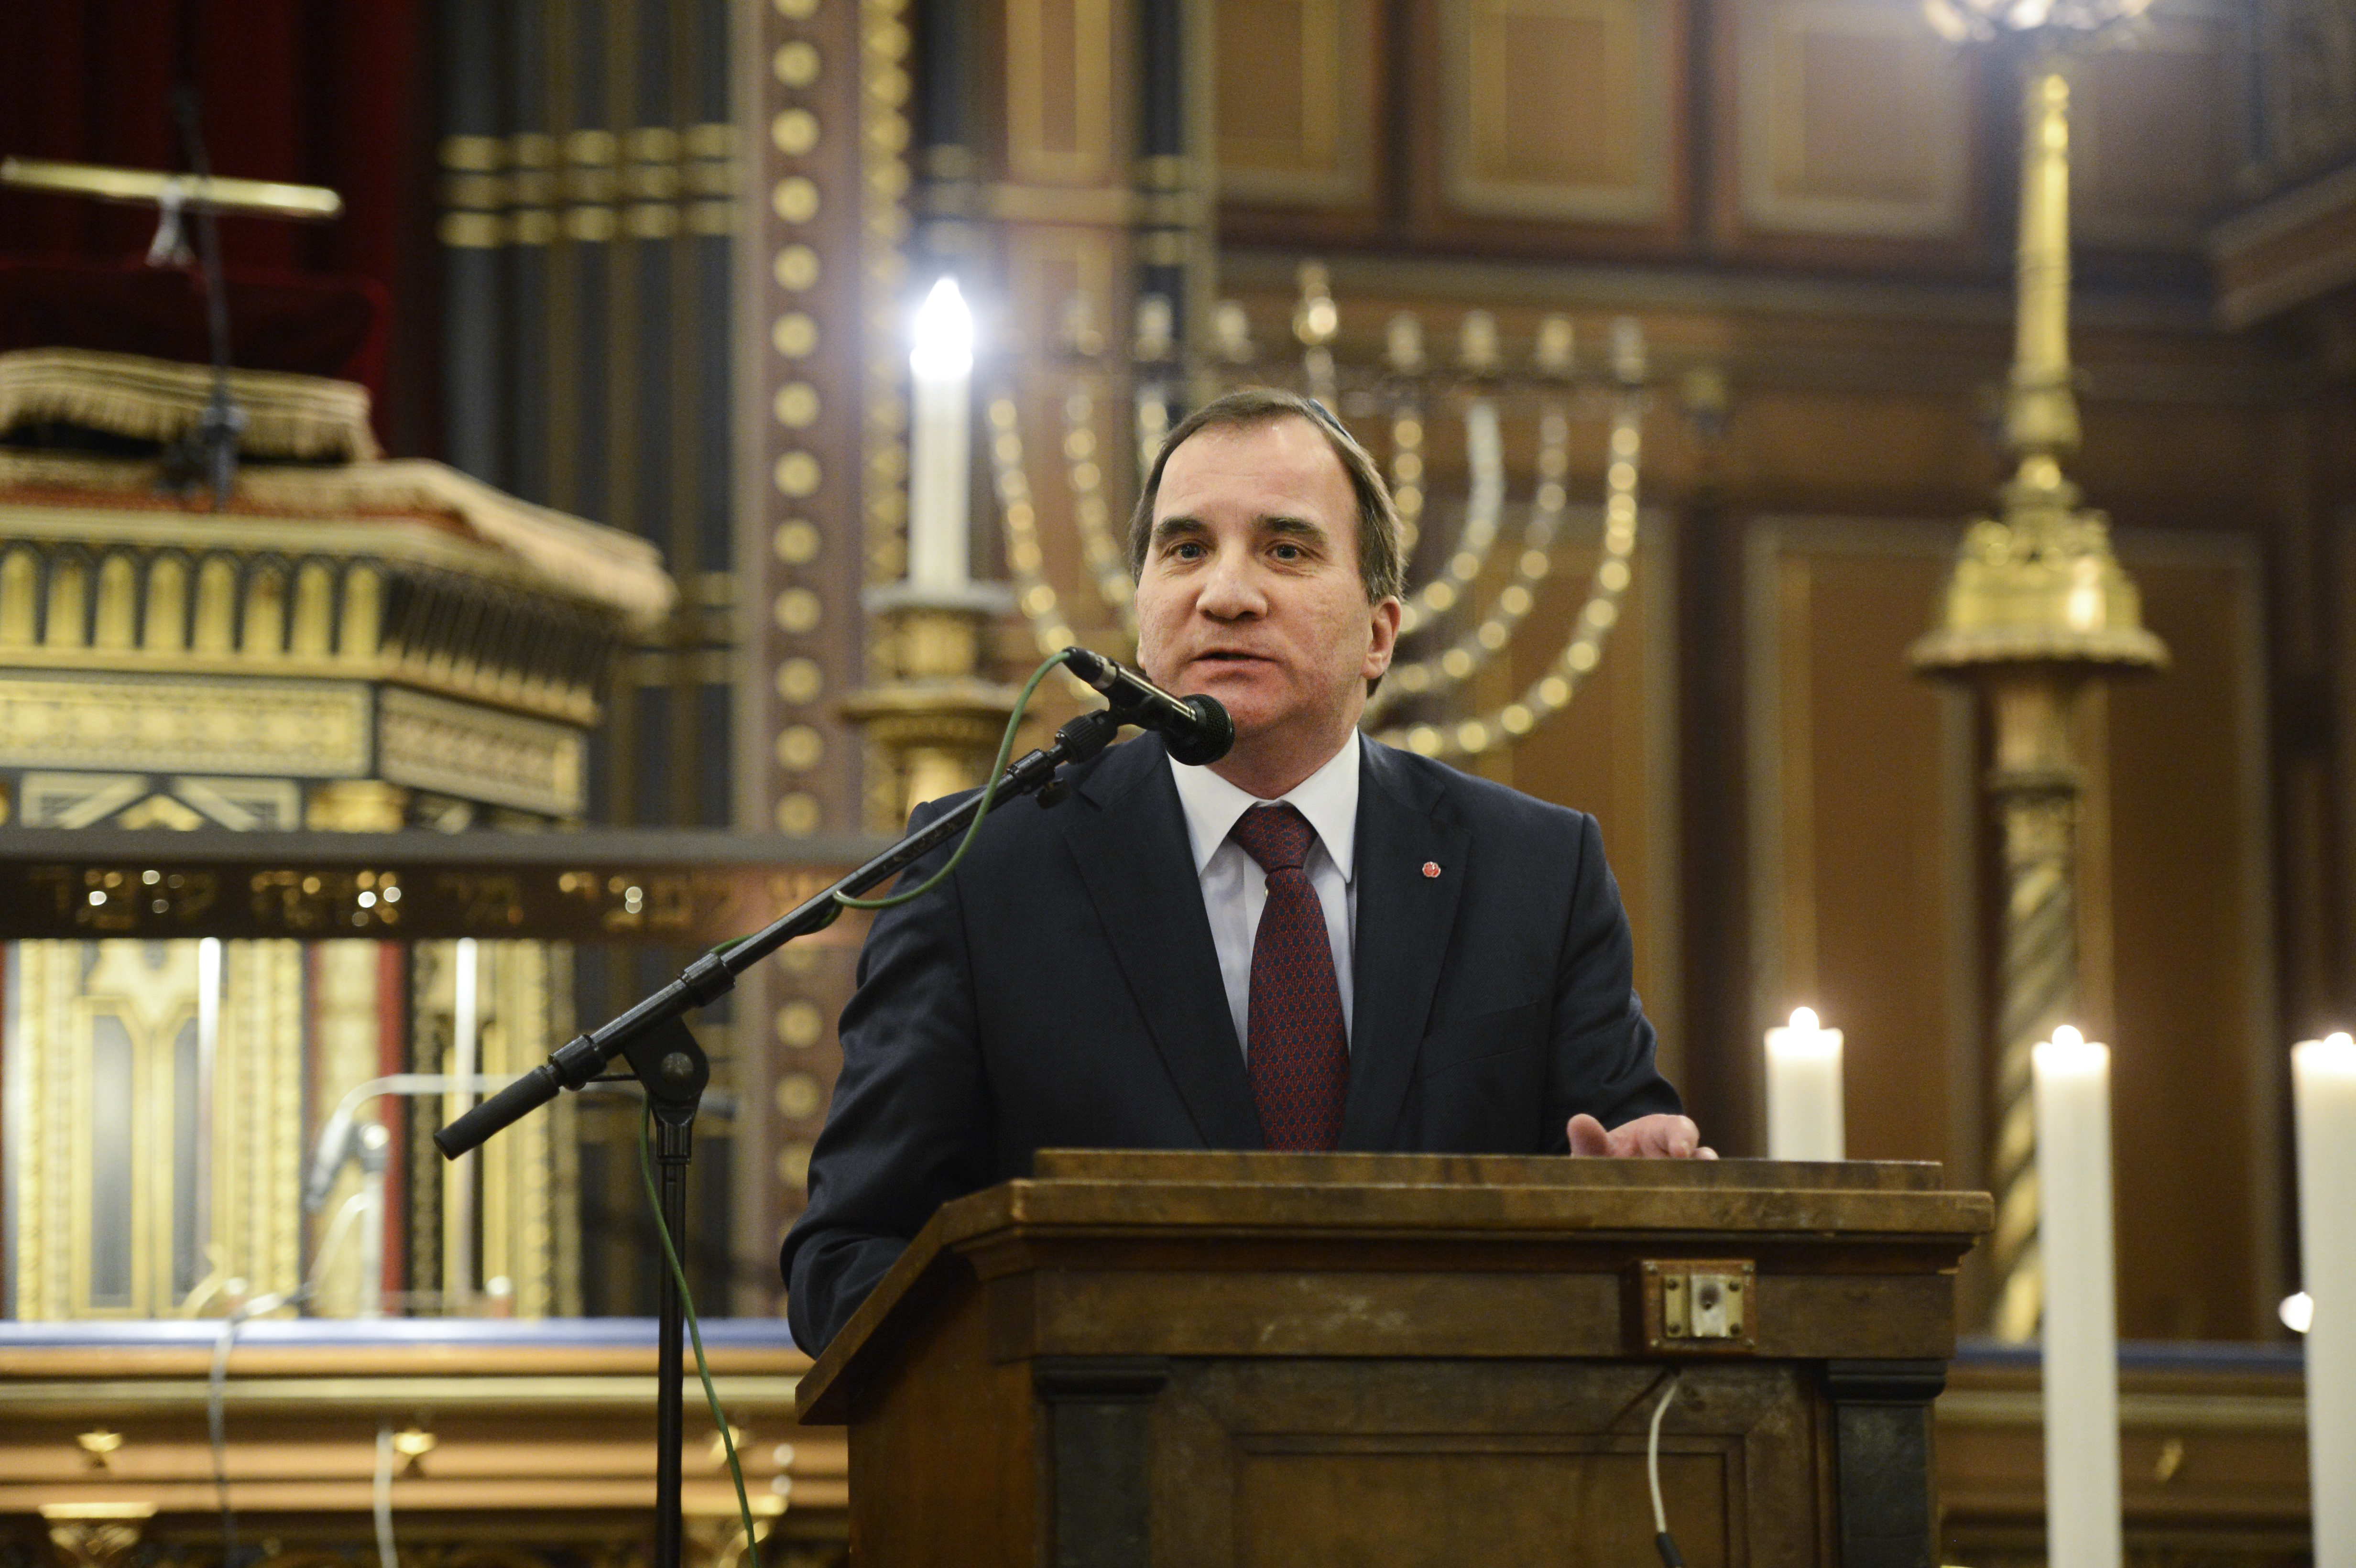 2013 höll nuvarande statsminister Stefan Löfven tal i en synagoga på minnesdagen.